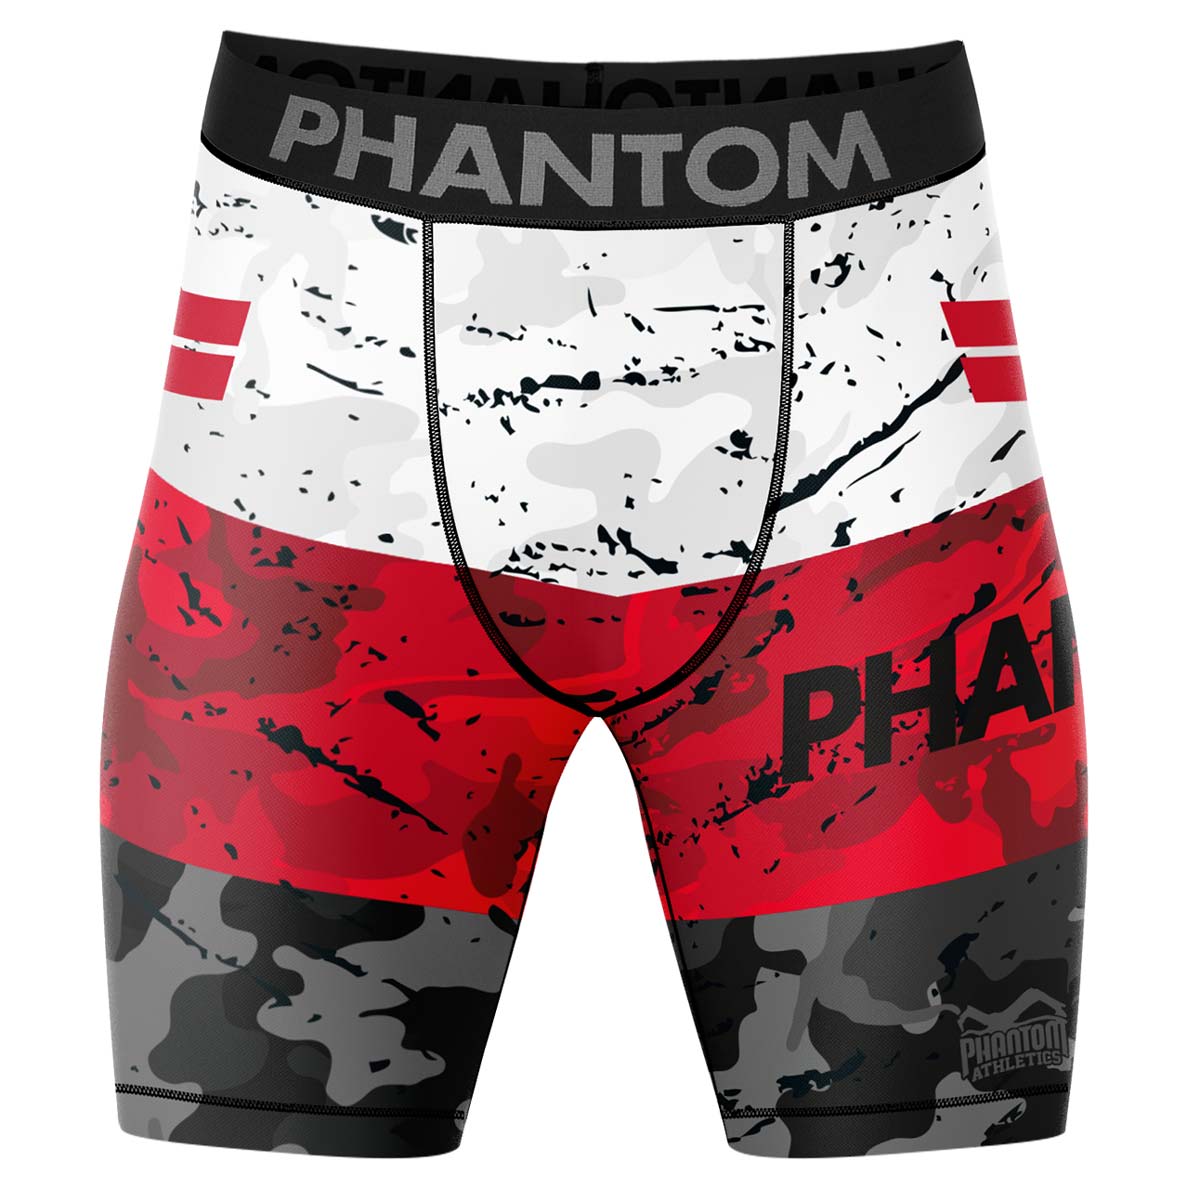 Phantom Compression Fightshorts in Rot/Schwarz/Weiß. Ultimativer Komfort und Bewegungsfreiheit.  Ideal für deinen Kampfsport. 